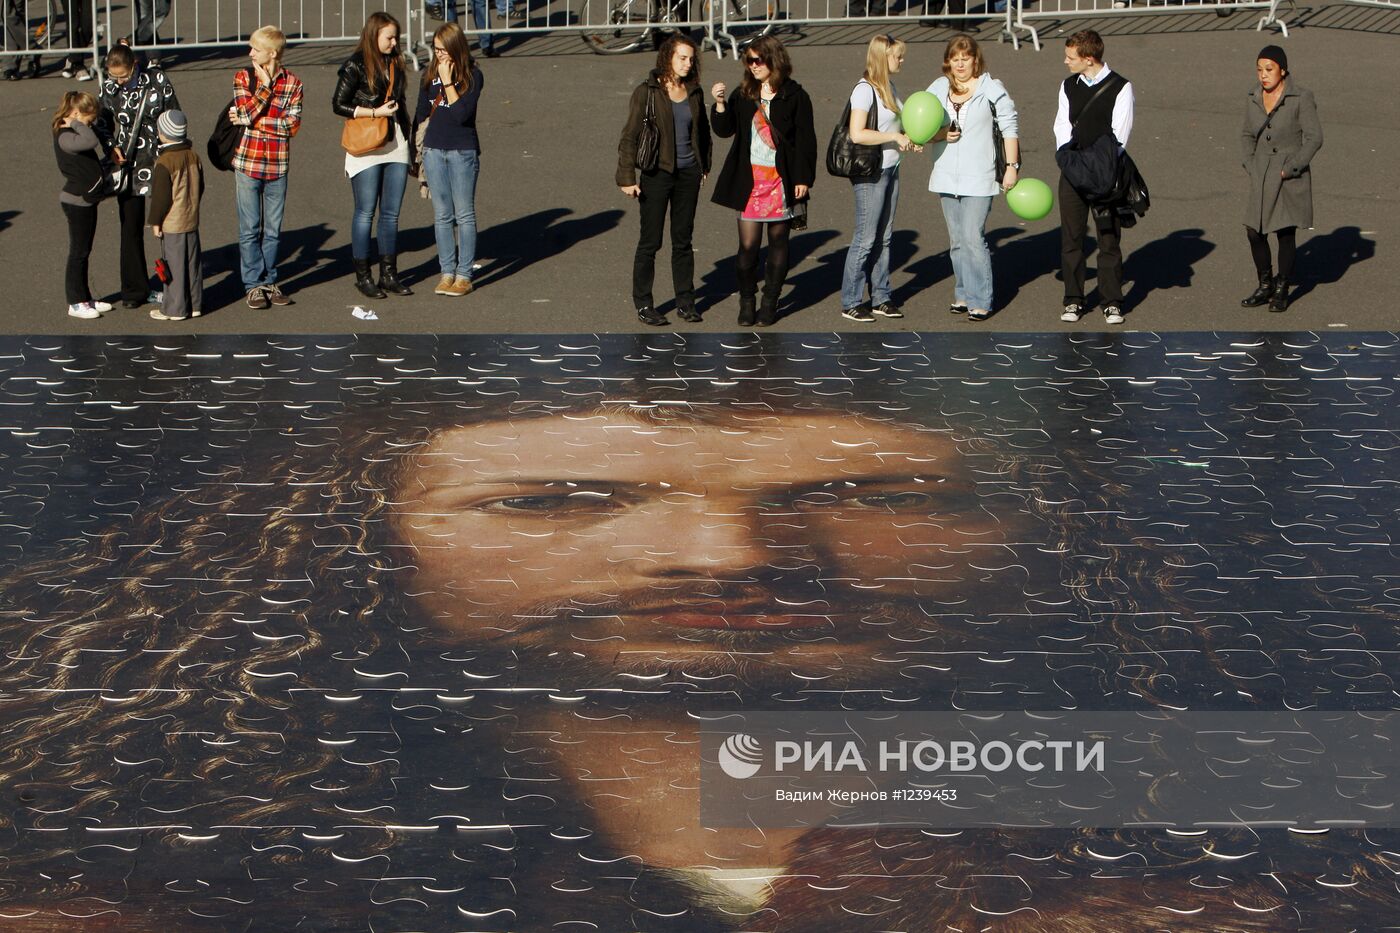 Гигантский пазл по картине Дюрера на Дворцовой площади